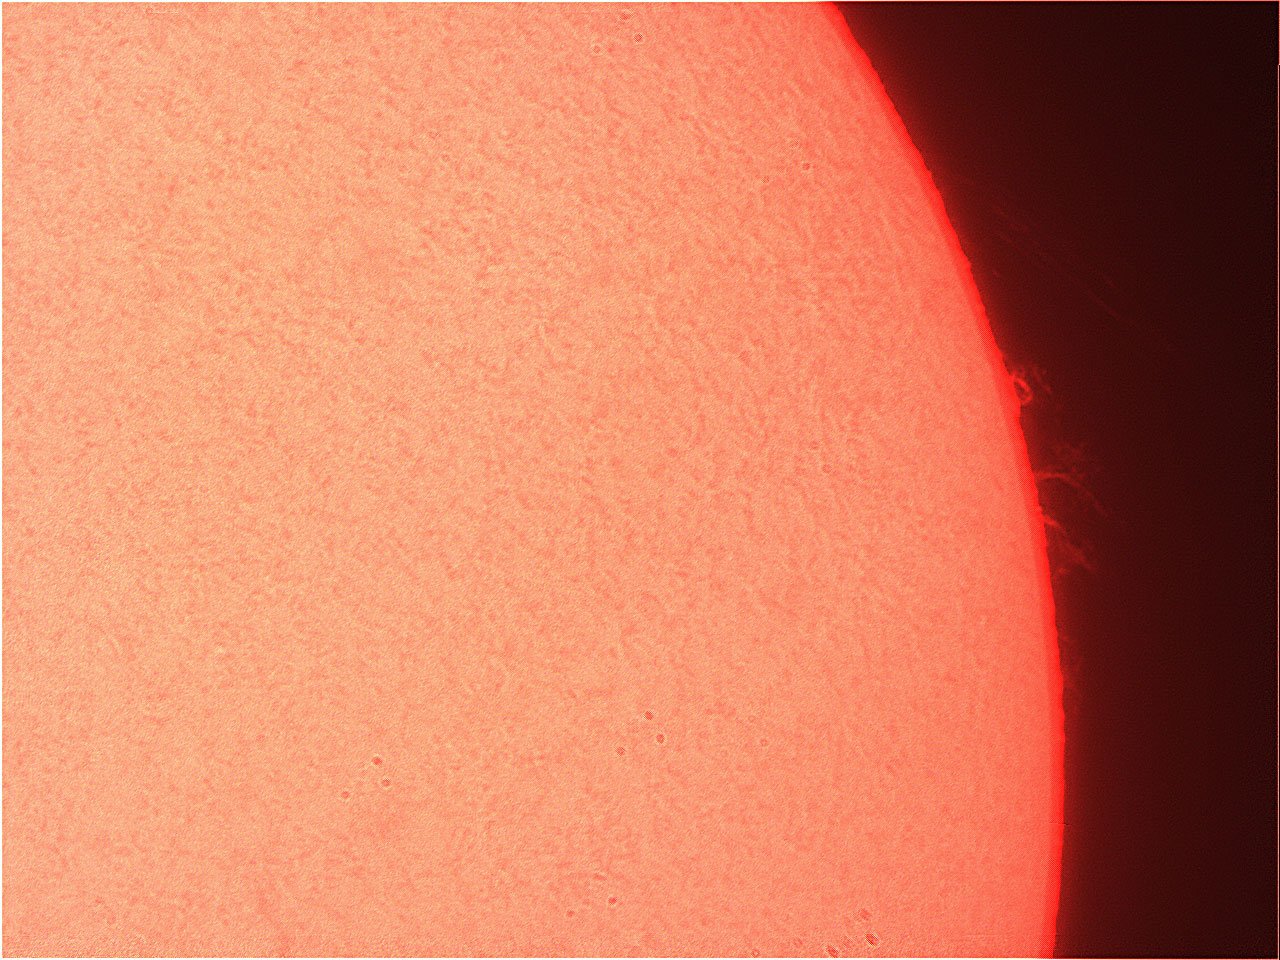 Prominence-151221-vid205.jpg